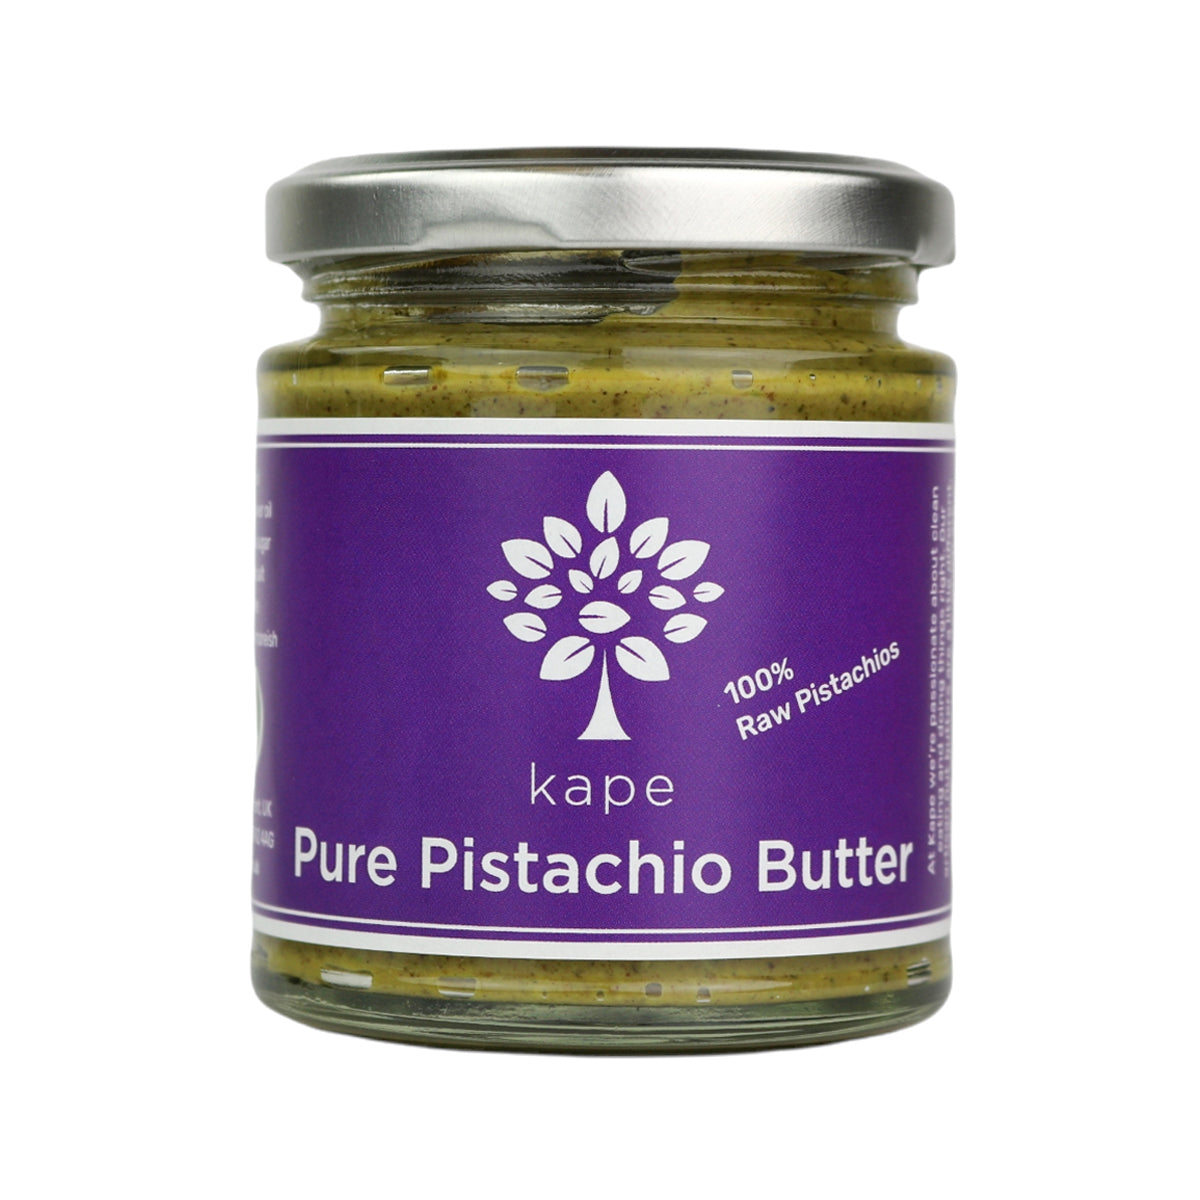 Pure Pistachio Butter